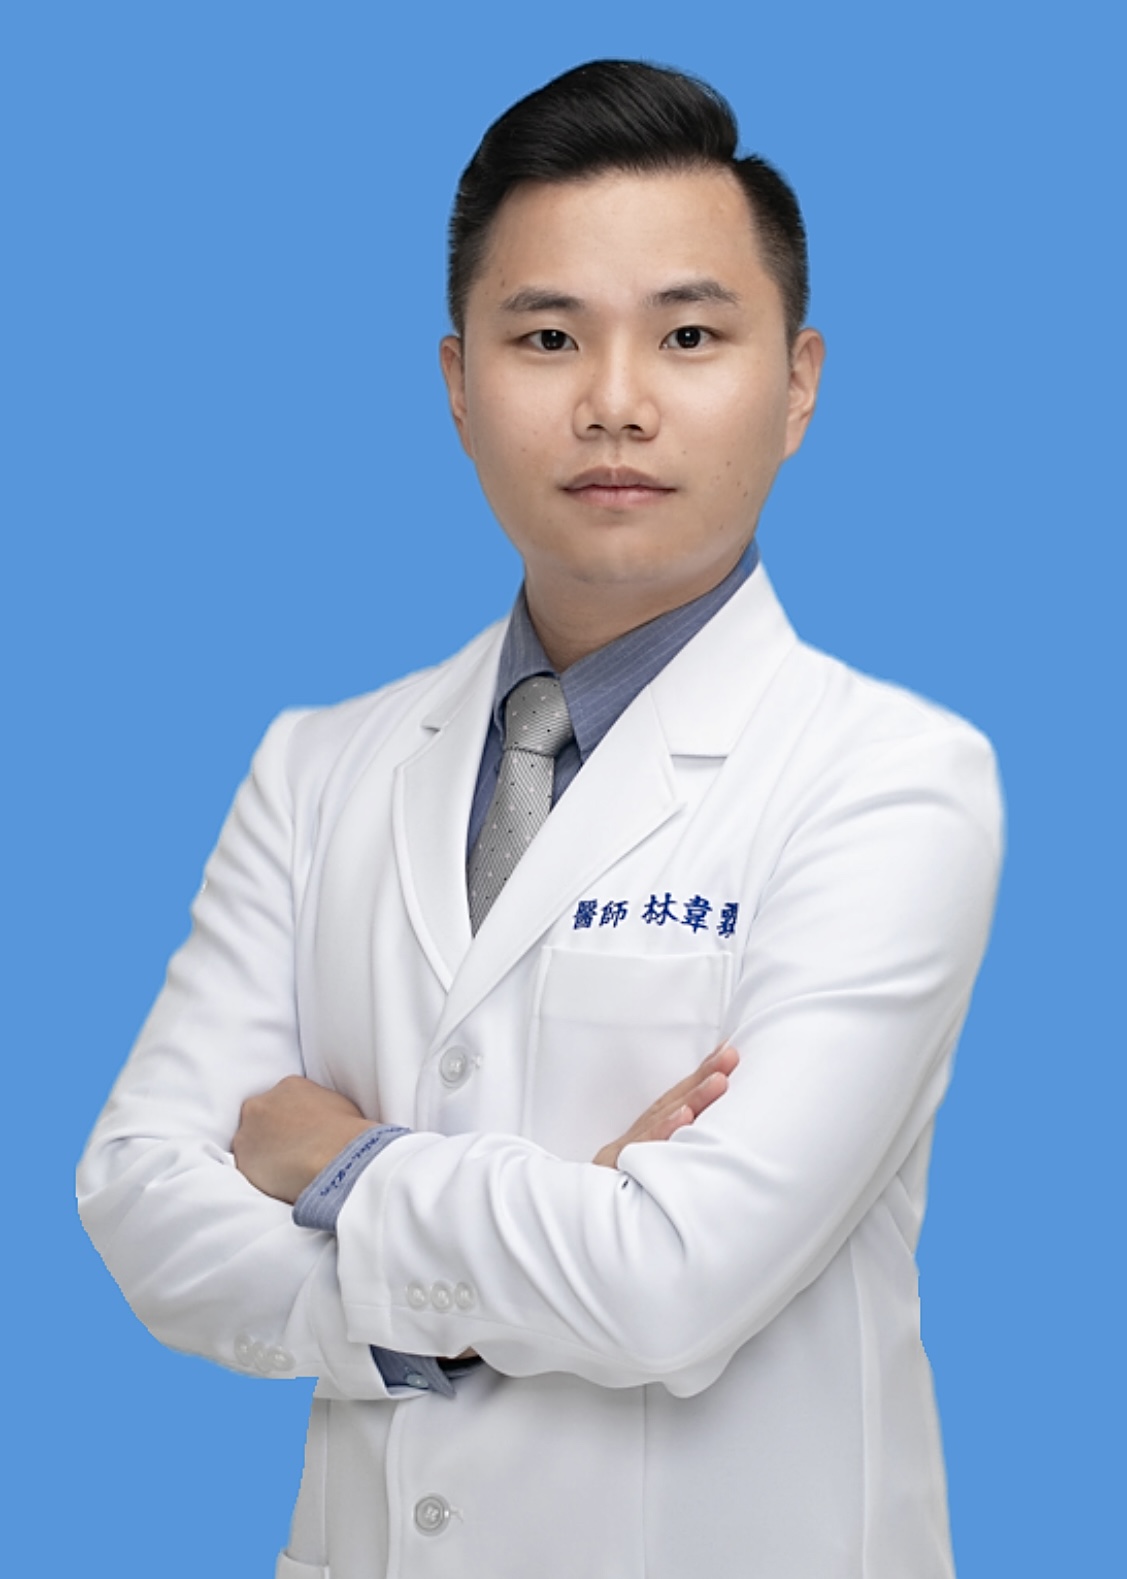 Wei-Lin Lin Attending Physician